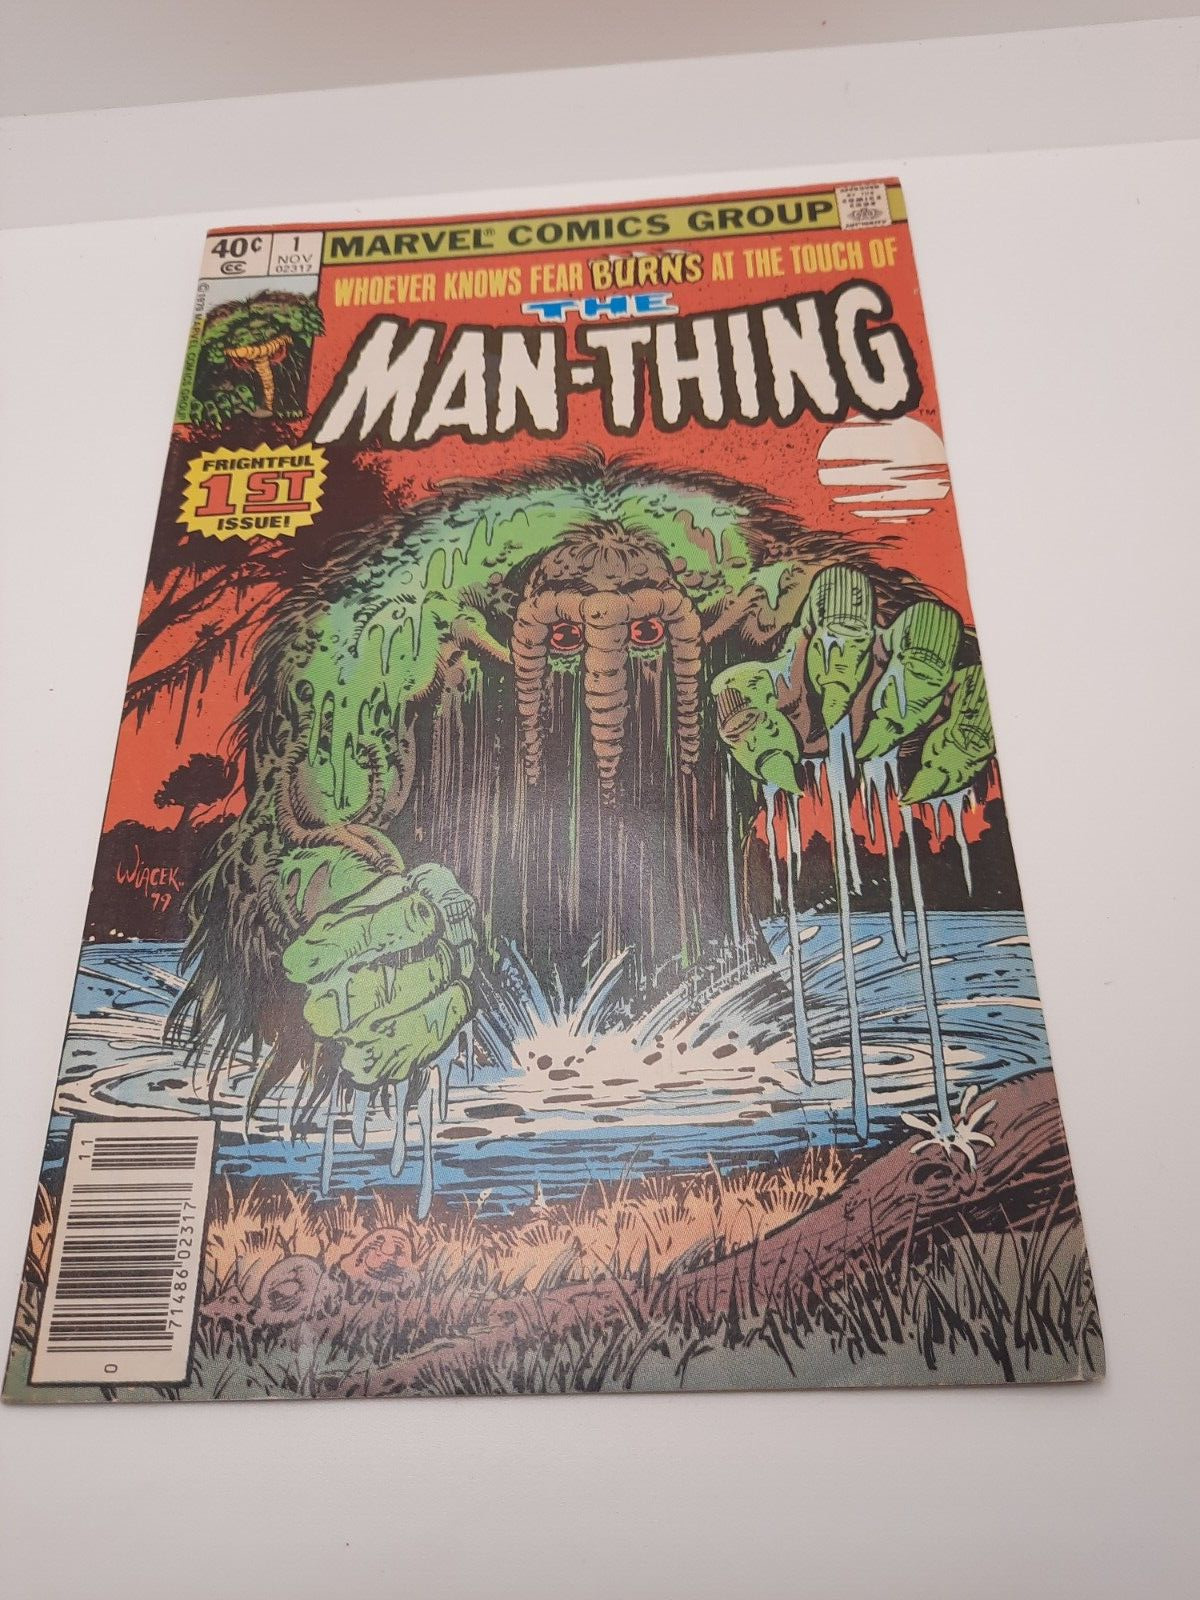 The Man-Thing Vol. 1 No. #1 (November 1979 ) Marvel Comics Group